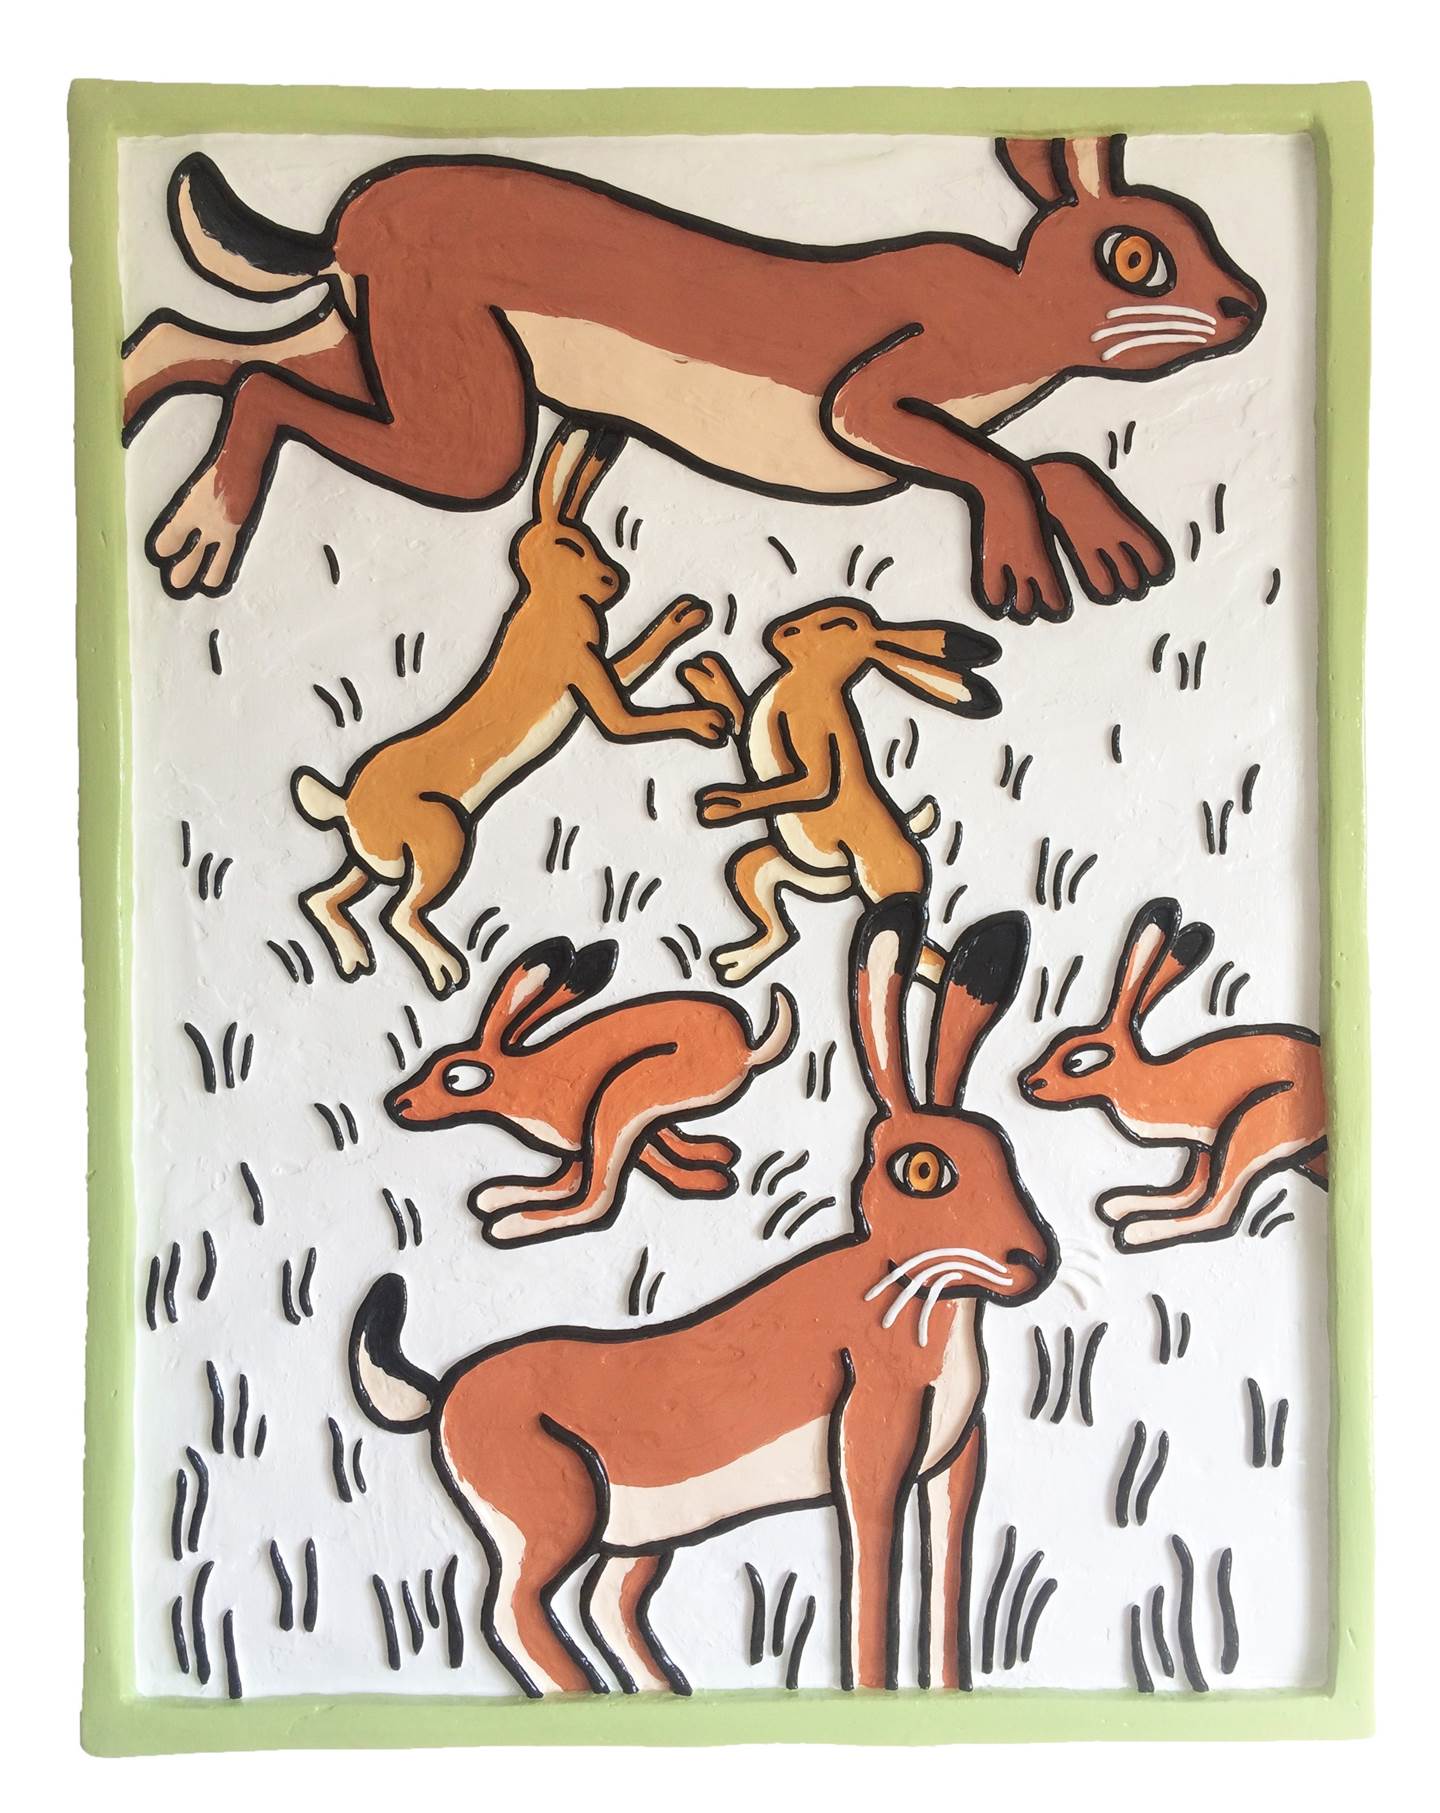 No campo em que nasci, a brincar cresci!, original Animals Mixed Technique Painting by Hugo Castilho